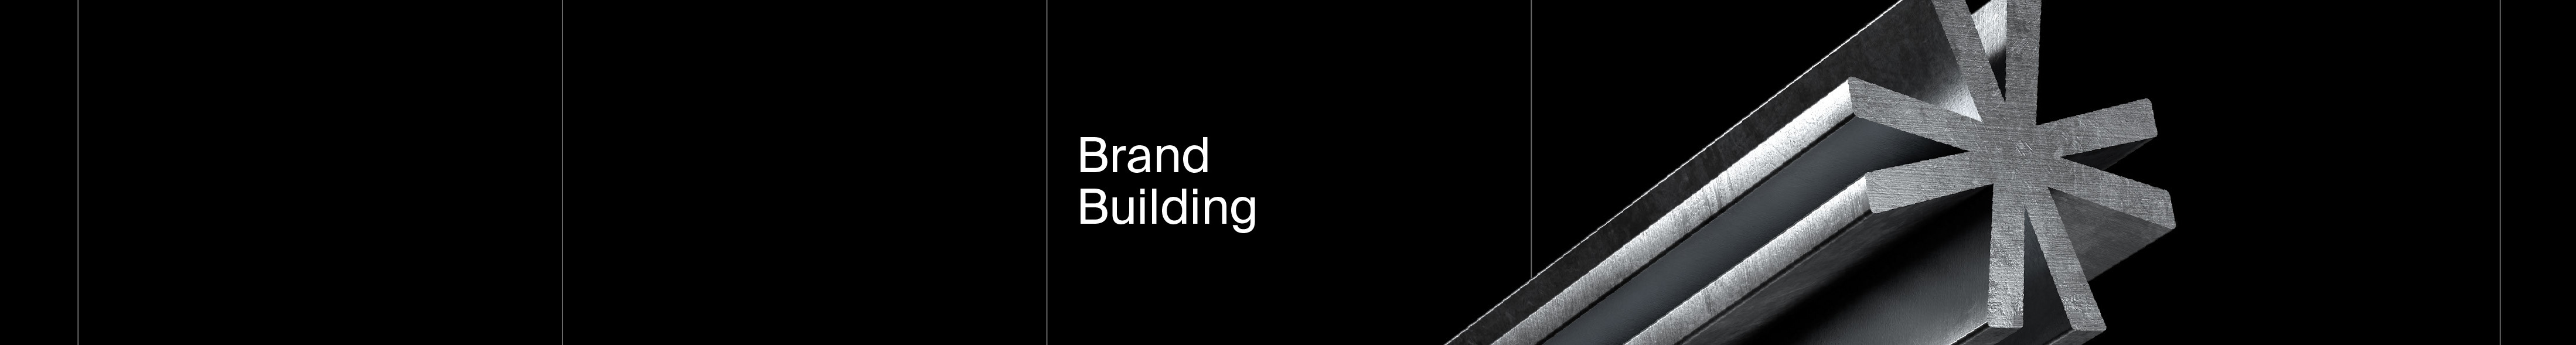 VXLAB Brand Buildings profilbanner